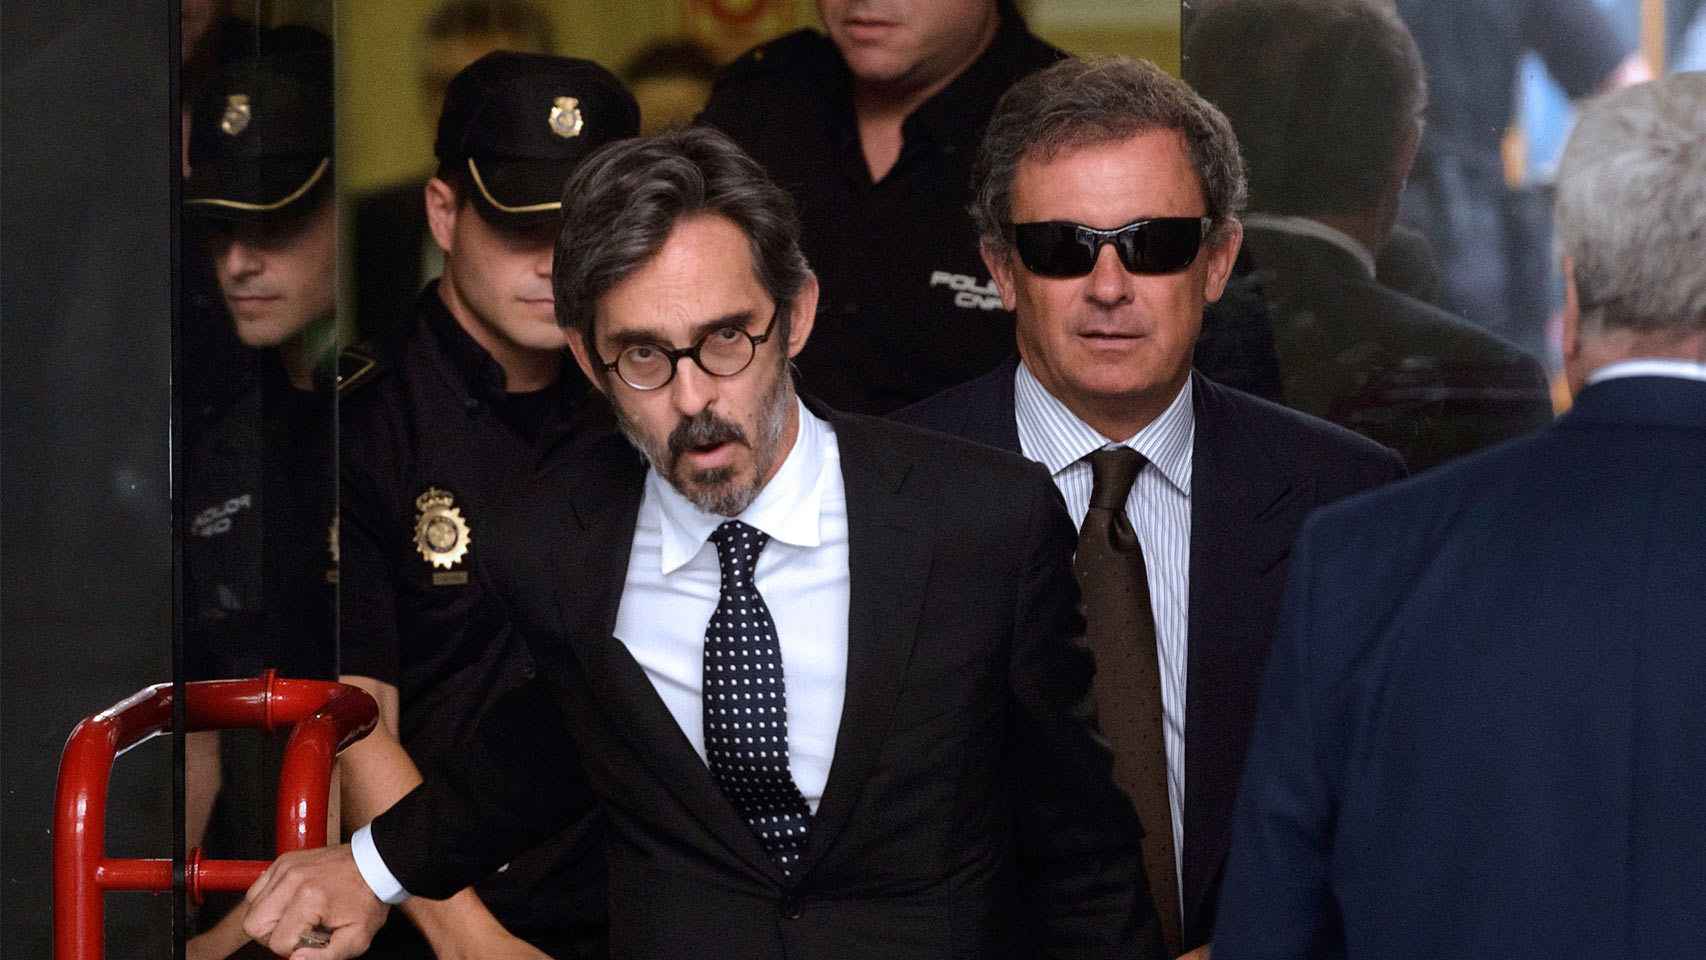 Jordi Pujol Ferrusola y su abogado, Cristobal Martell, salen del juzgado en 2014.